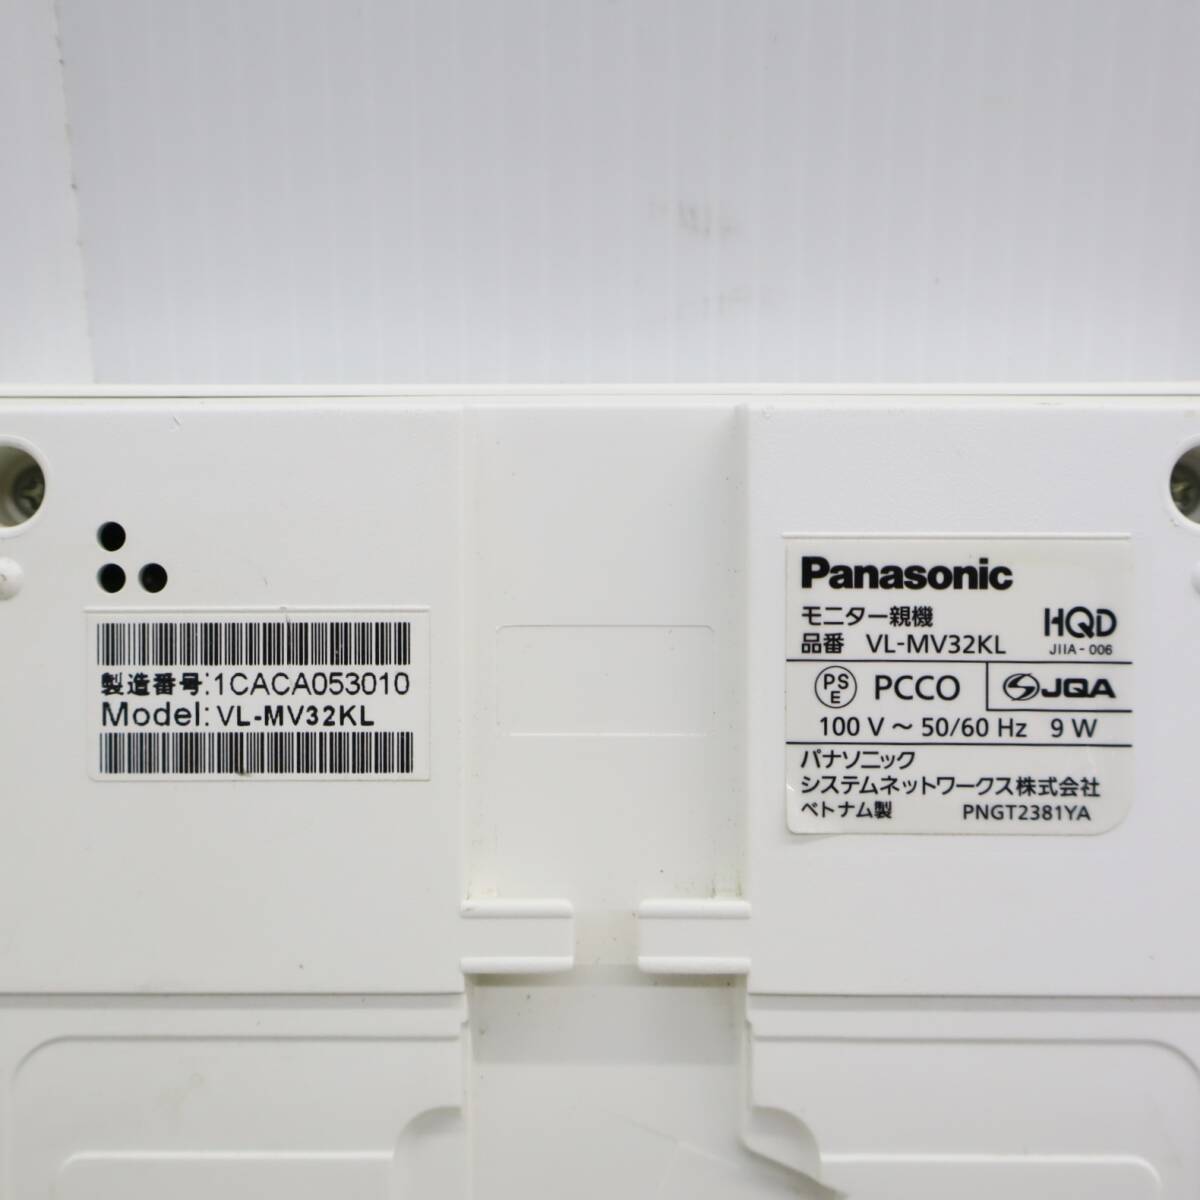 ∨ включение питания   проверка   только  ｜ монитор  идет в комплекте  ... ... ｜Panasonic  Panasonic  VL-MV32  цвет  монитор   TV  дверь ...｜ ... для  ■P1264